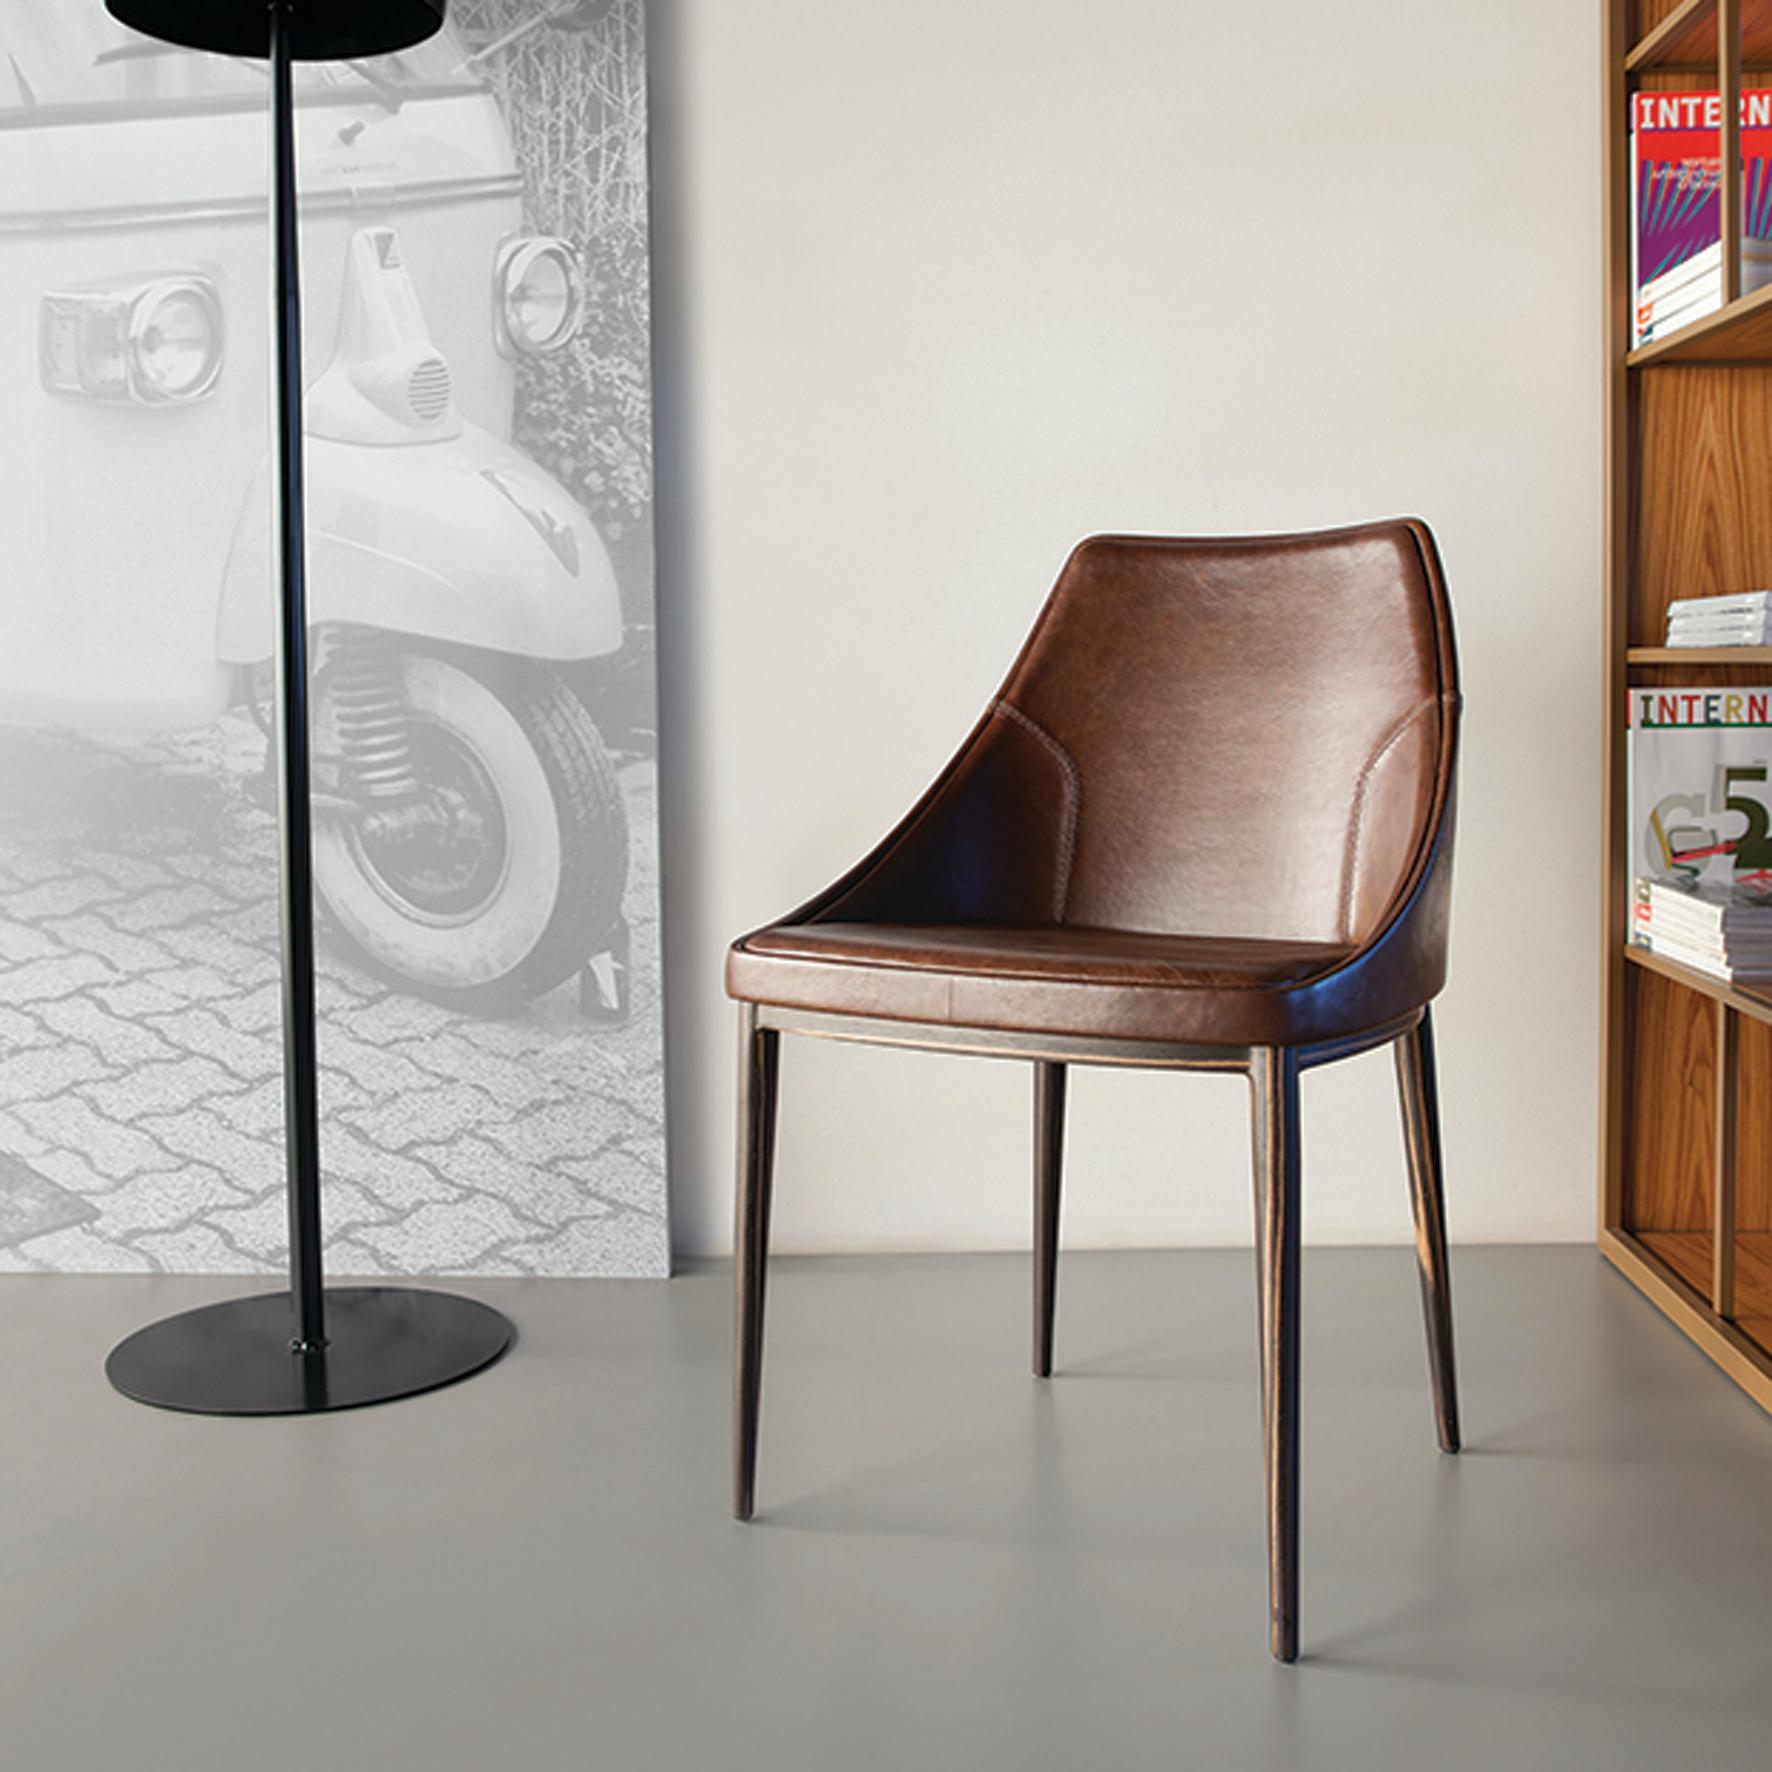 Bloo-Stuhl von Doimo Brasil
Abmessungen: B 50 x T 53 x H 79 cm 
MATERIALIEN: Stuhl aus Furnier und Fiberglas mit gepolstertem Sitz.


Mit der Absicht, guten Geschmack und Persönlichkeit zu vermitteln, entschlüsselt Doimo Trends und folgt der